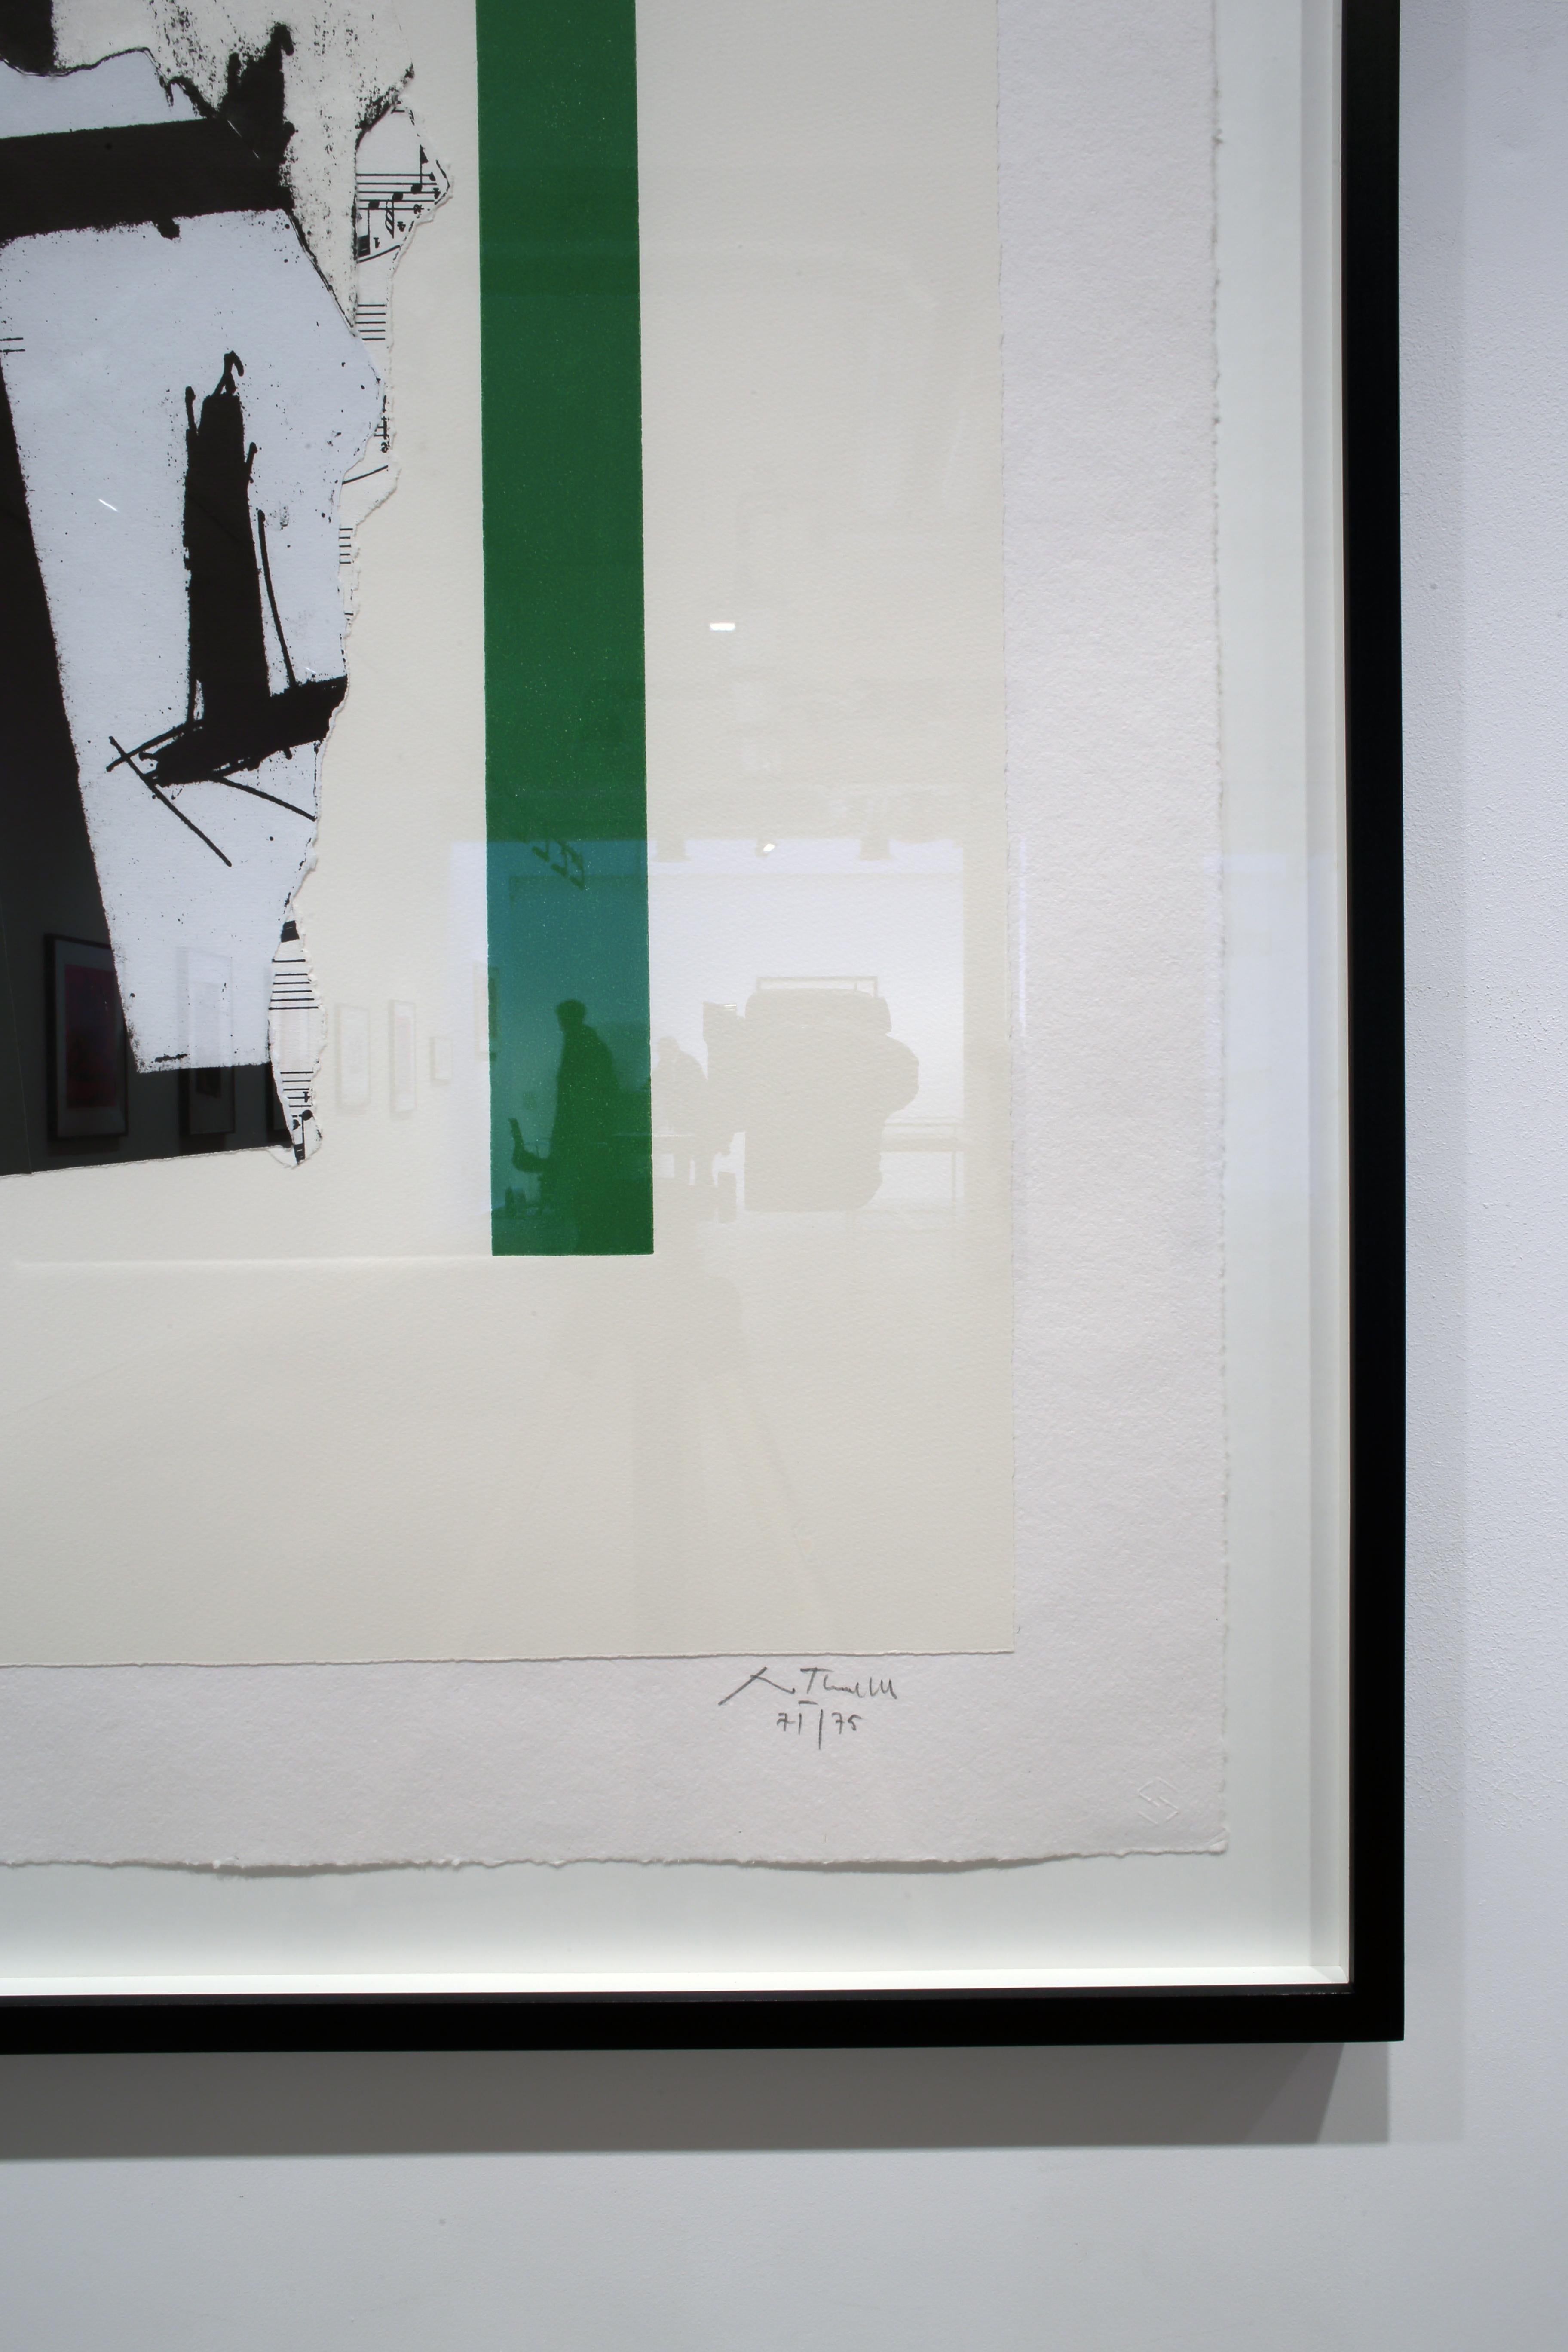 Rober Motherwell
In Weiß mit grünen Streifen
1987
Lithografie, Reliefdruck, Prägung und Collage
86.4 x 61  cm (34 x 24 cm)